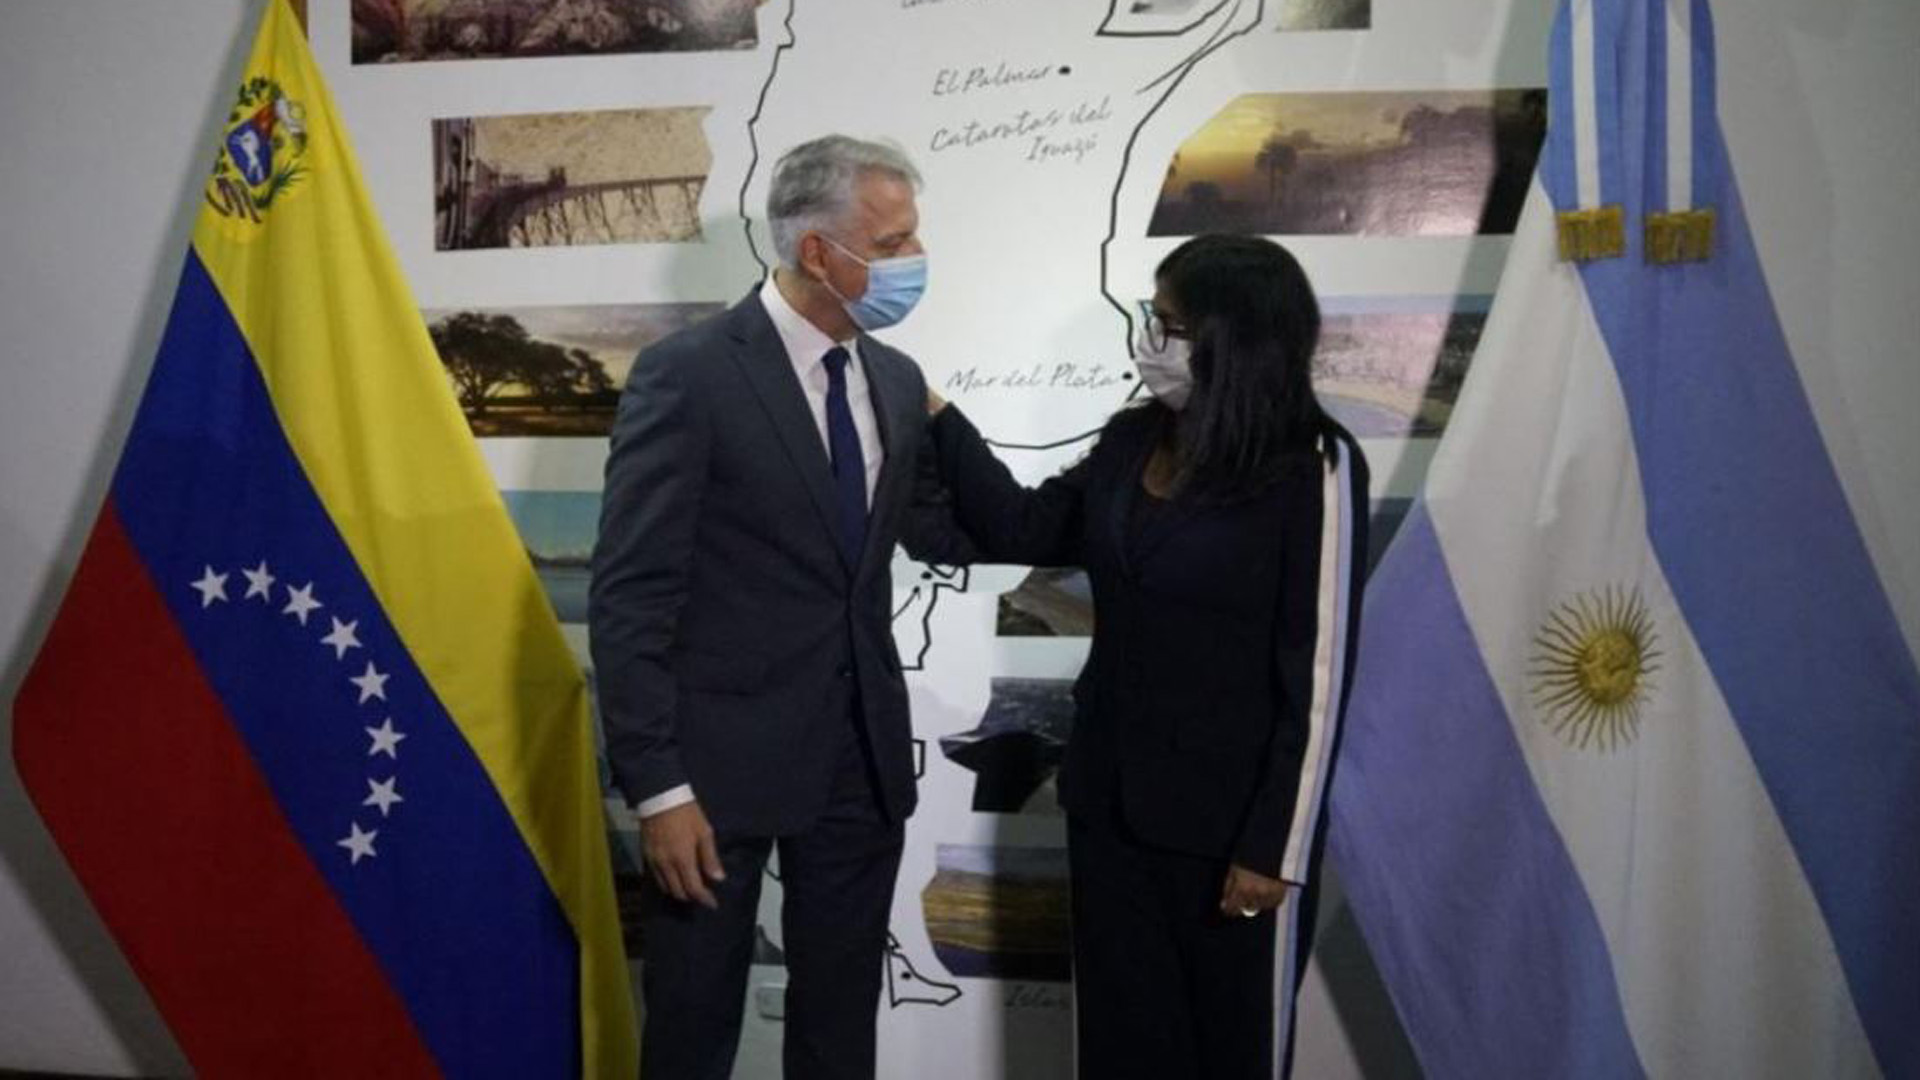 El Gobierno ratificó su cercanía con el régimen de Nicolás Maduro al invitar a un acto en la embajada argentina a la vicepresidenta chavista